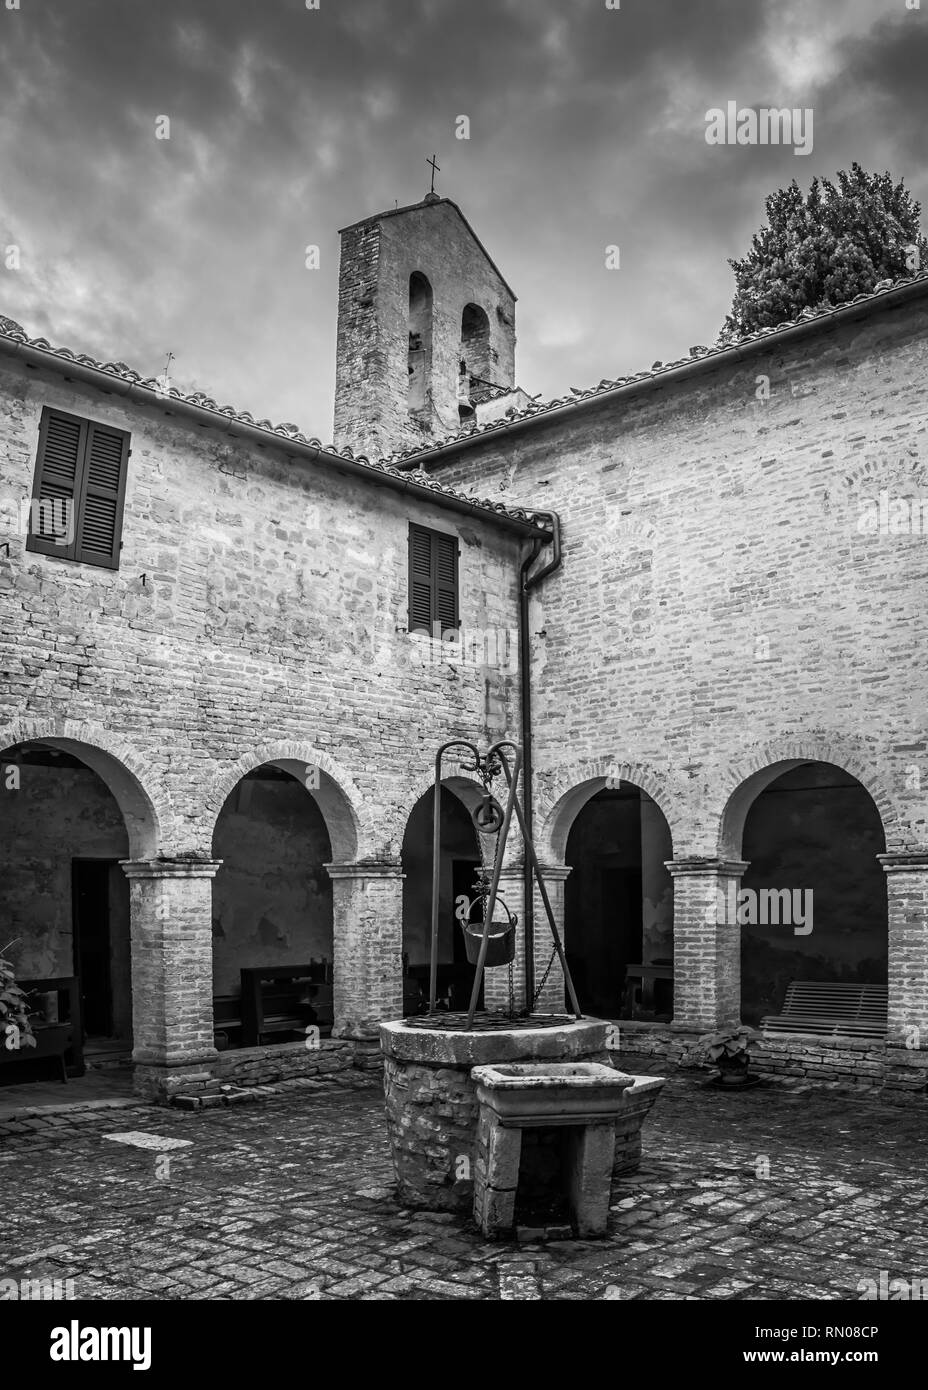 Immagine in bianco e nero della chiesa di Monte San Bartolo monastero a Pesaro, Marche, Italia. Foto Stock